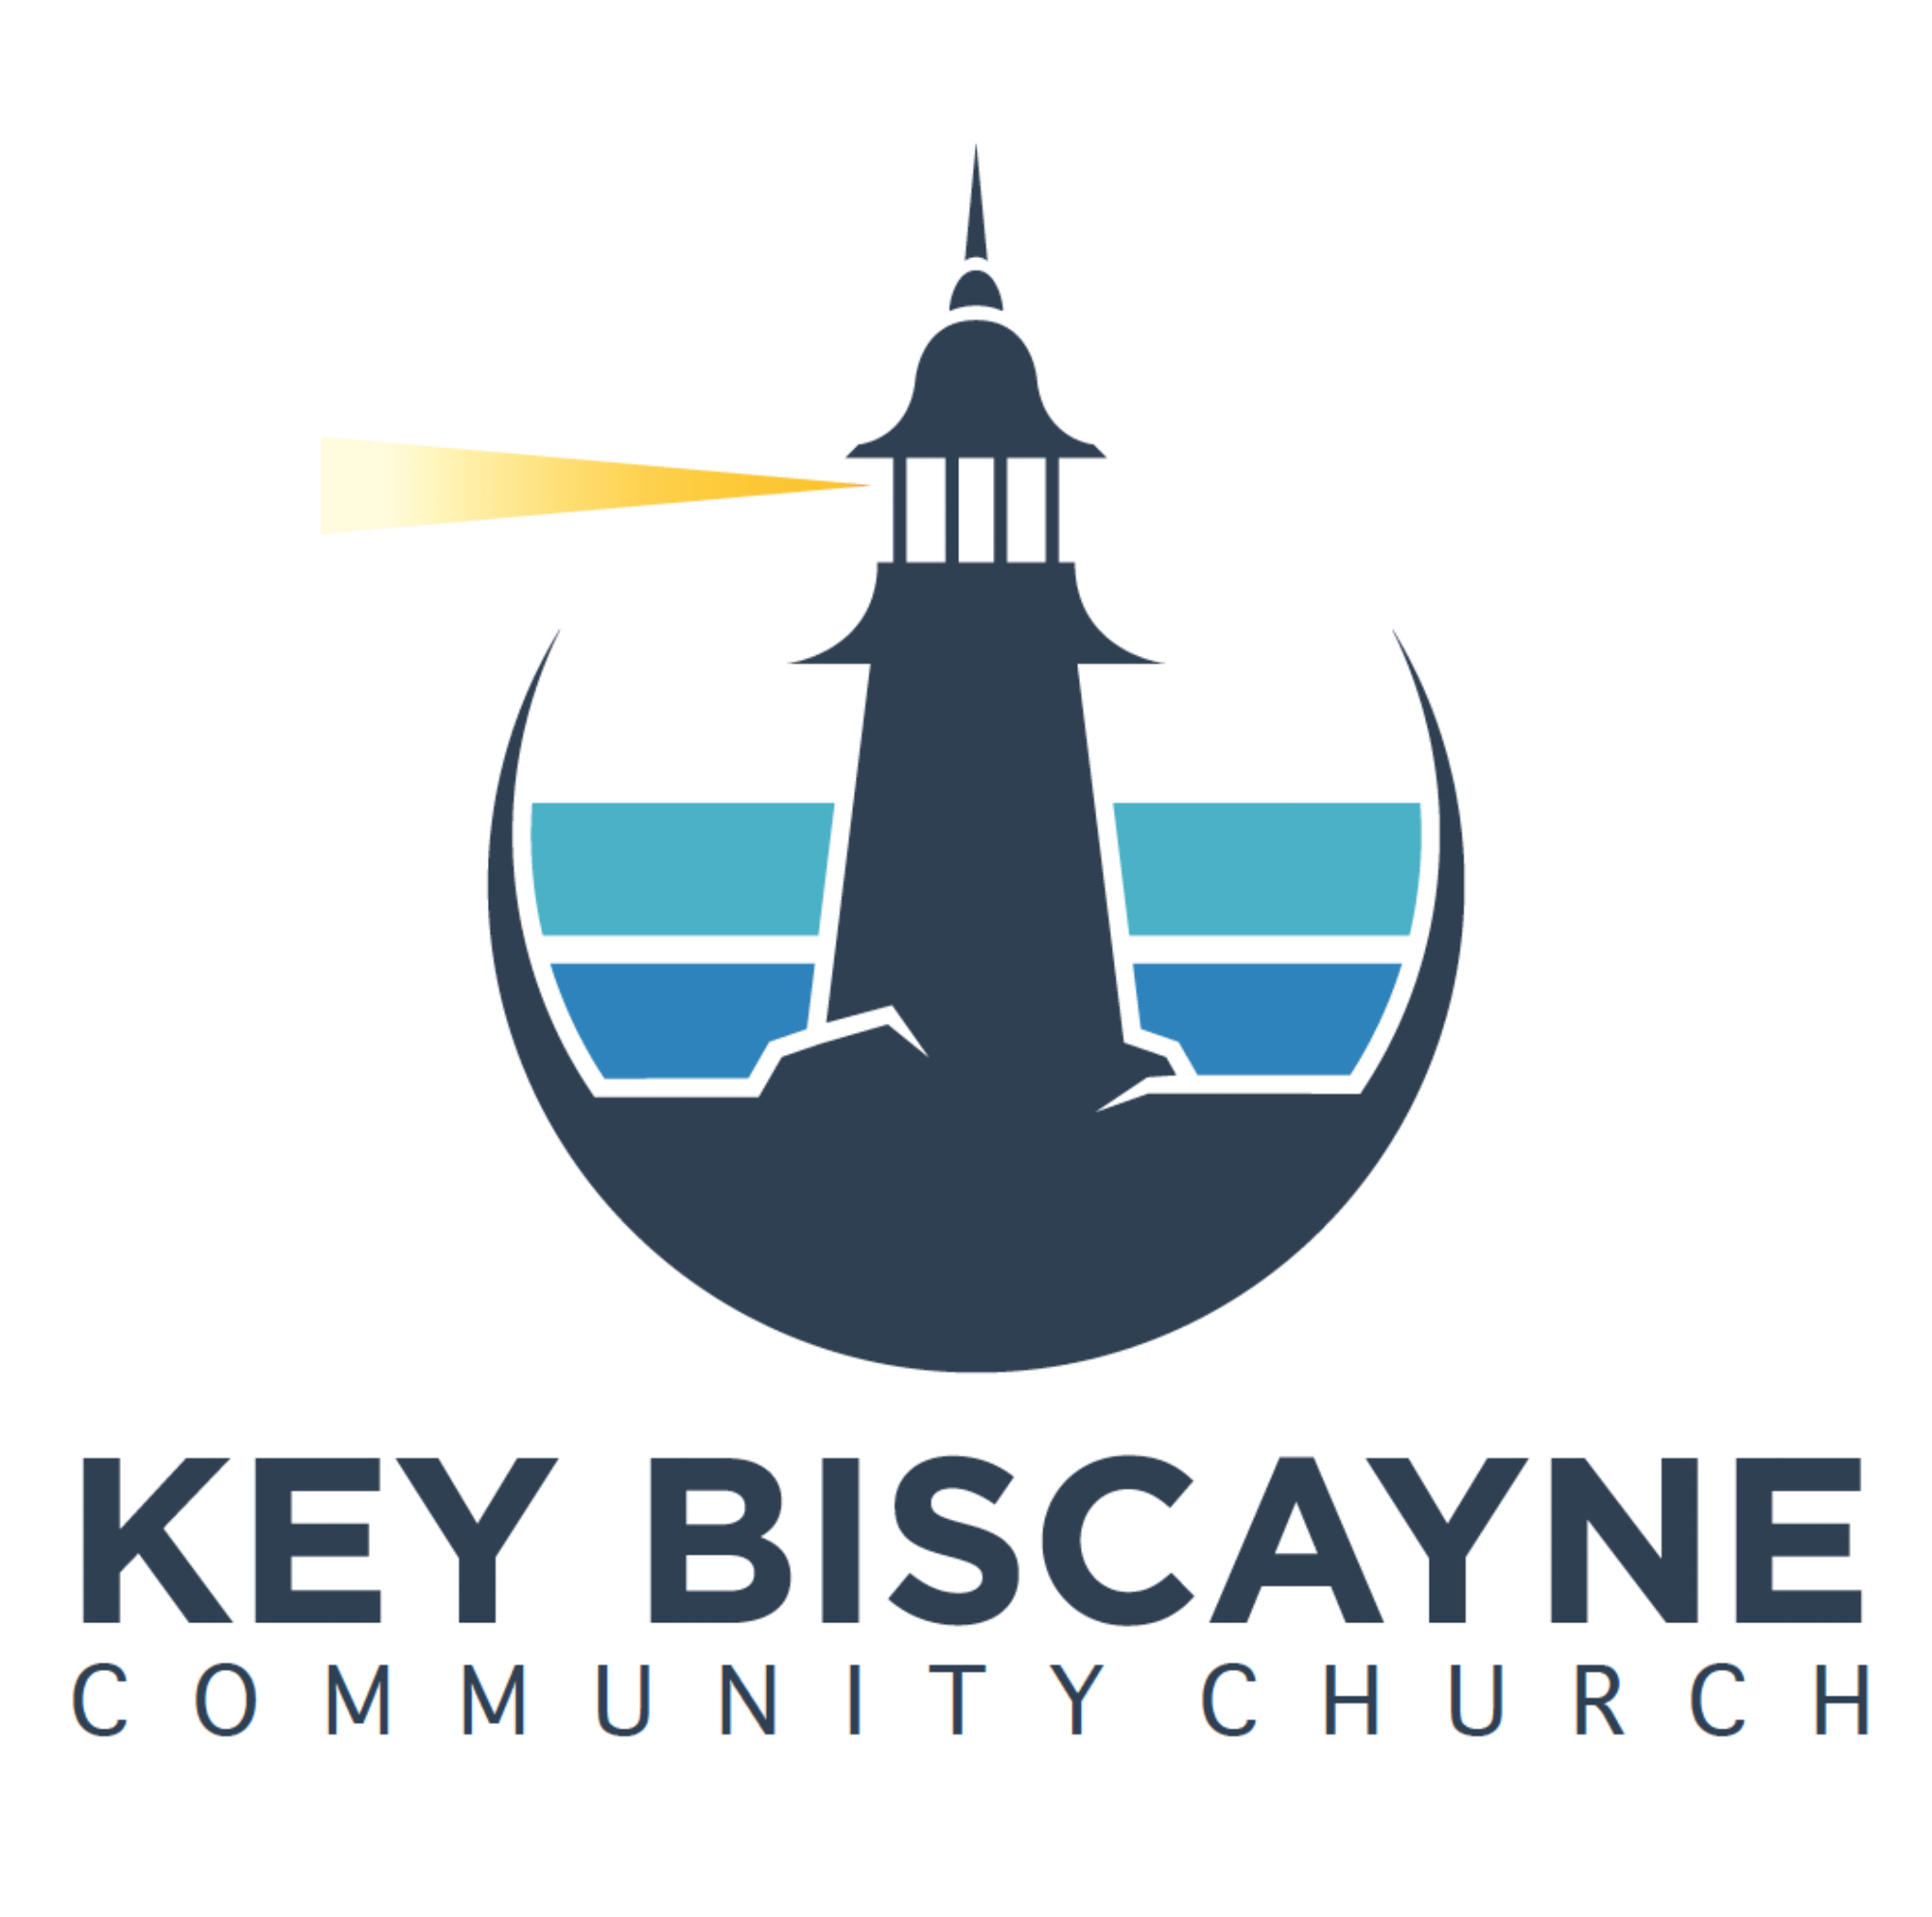 Key Biscayne Community Church